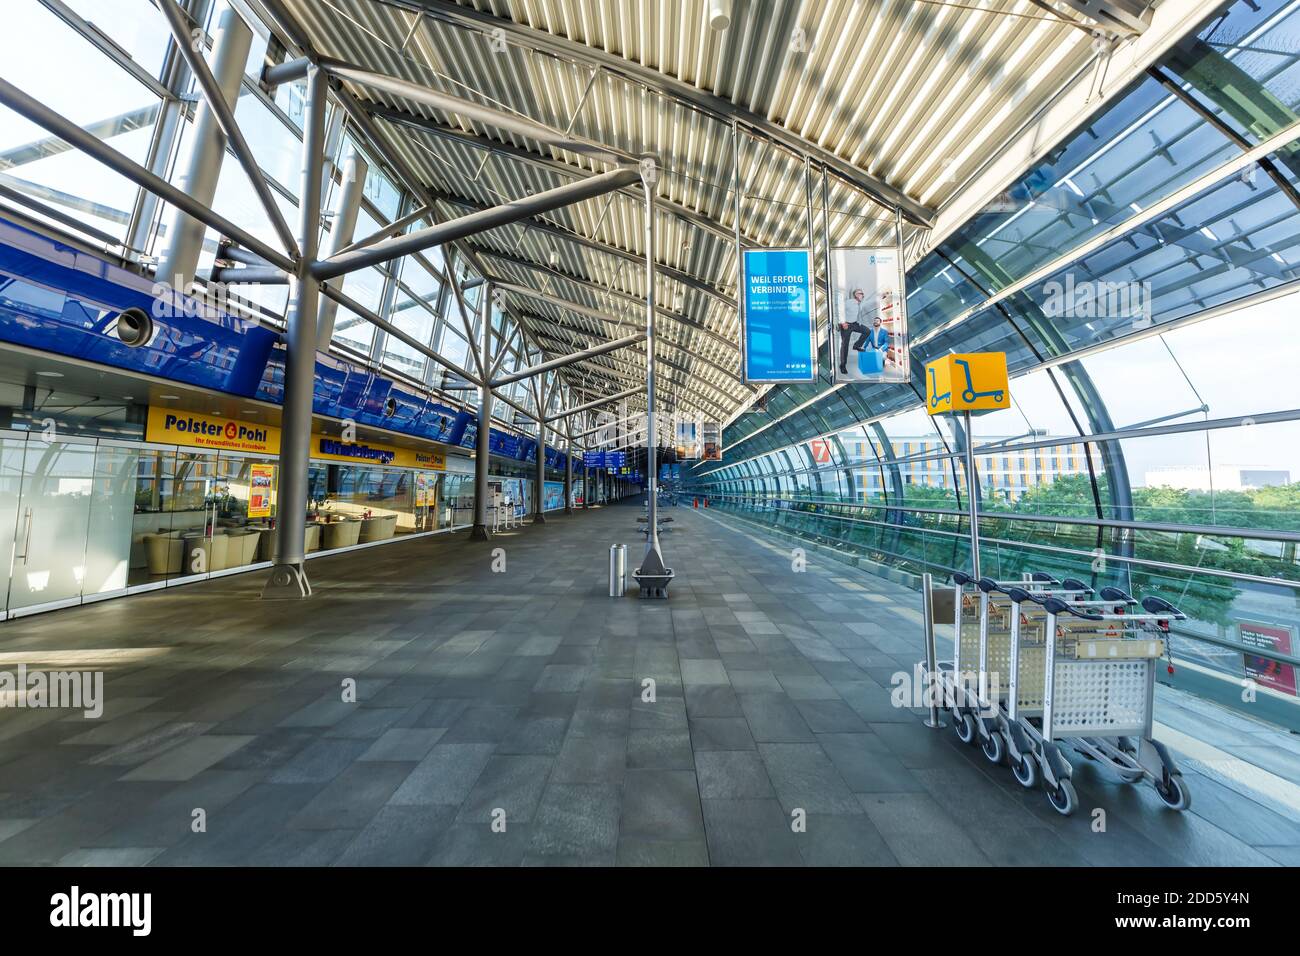 Leipzig, Germany - August 18, 2020: Terminal building of Leipzig Halle LEJ Airport in Germany. Stock Photo